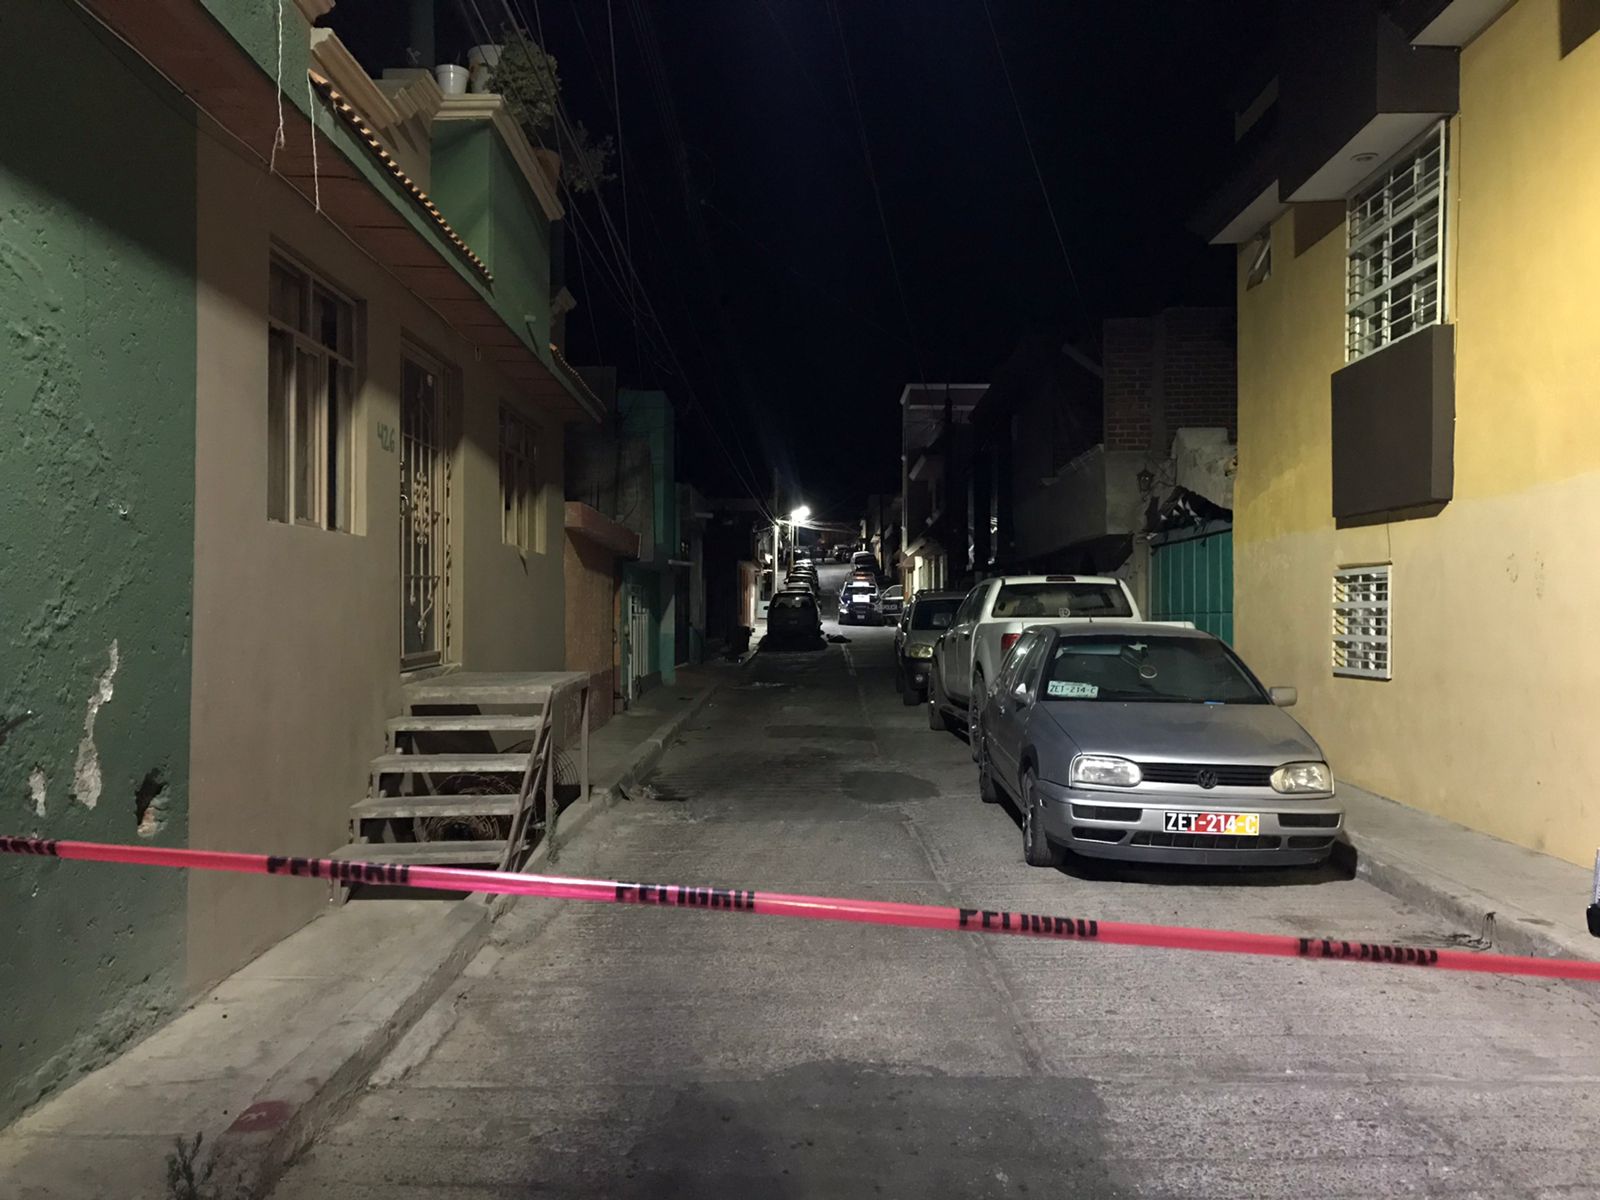 Matan a balazos a dos hombres en la Lázaro Cárdenas en Zacatecas.